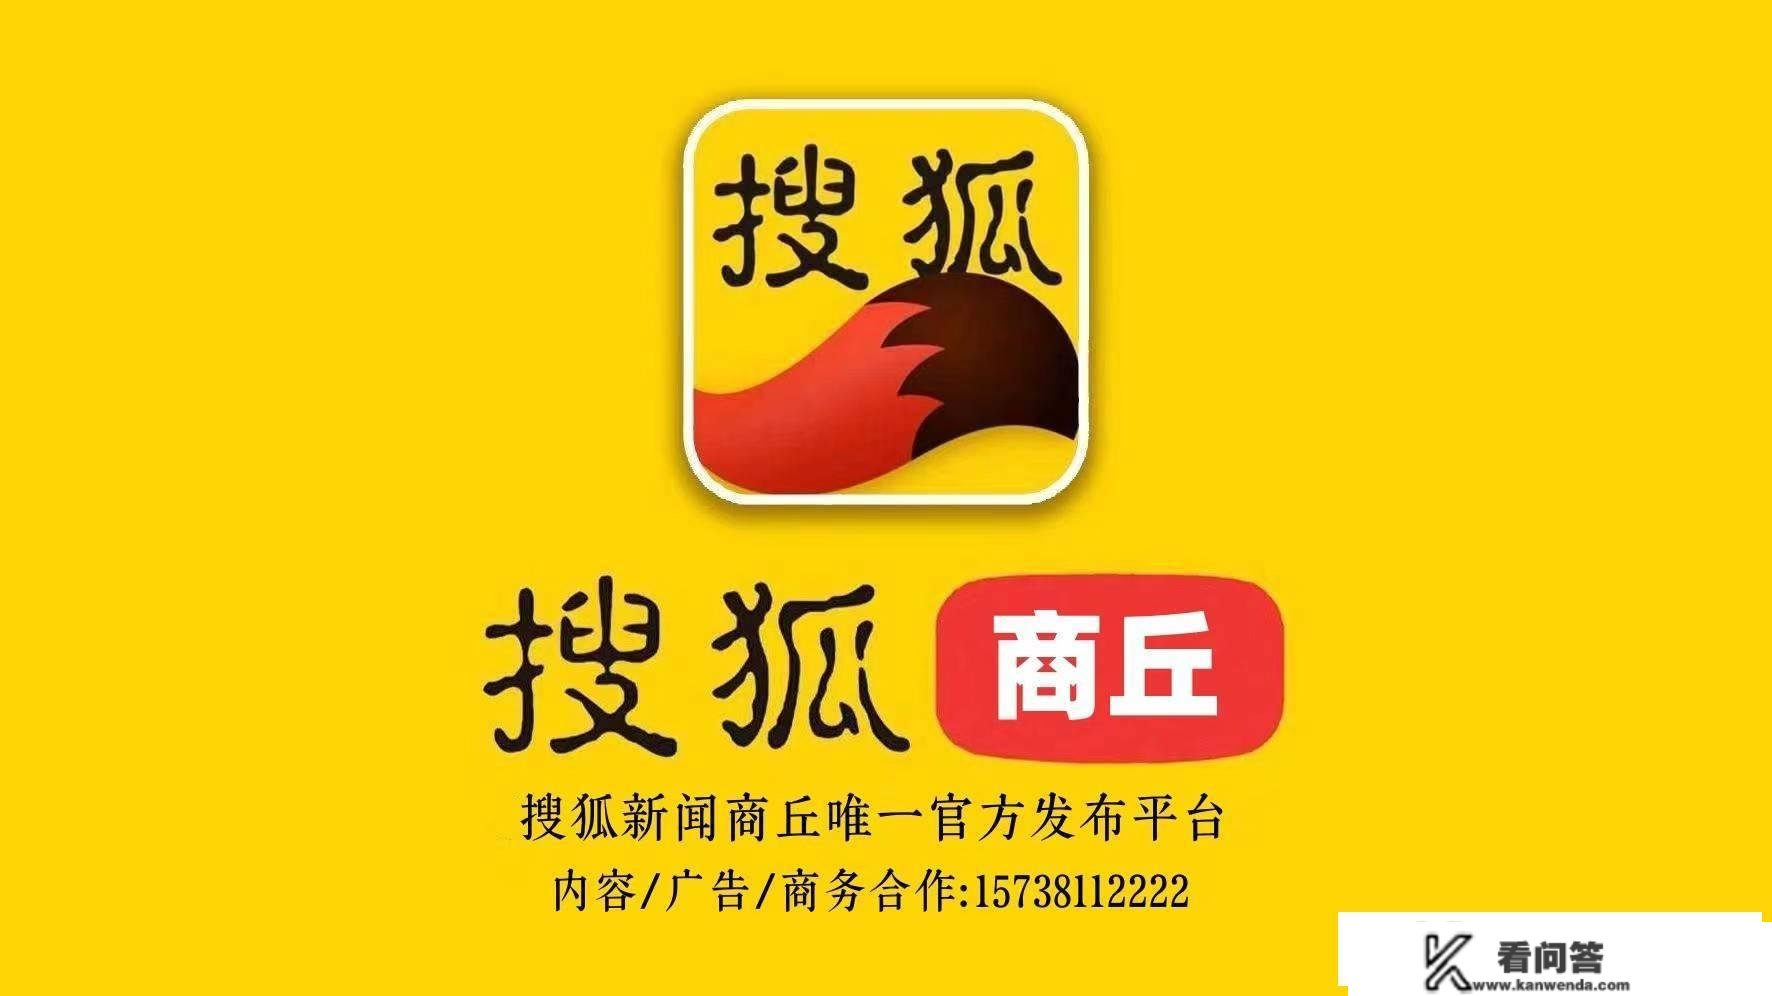 中信银行郑州分行协助客户防备电信诈骗为客户资金保驾护航